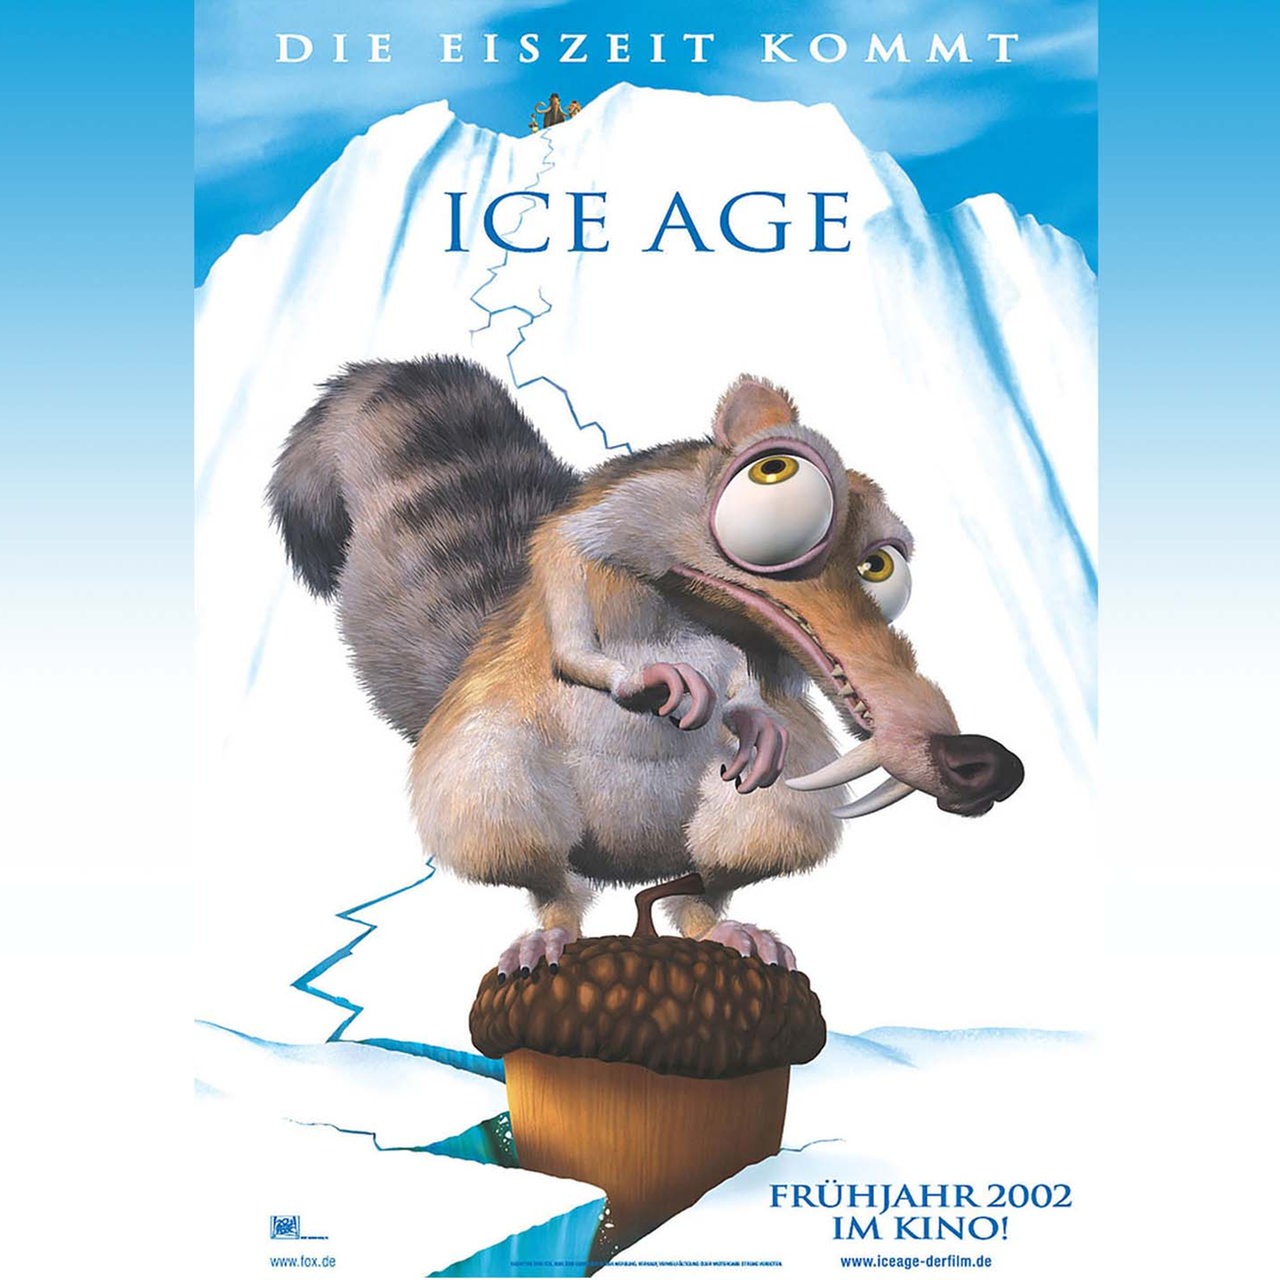 Kinoplakat von 2002 "Ice Age" (die Eiszeit wird kommen)